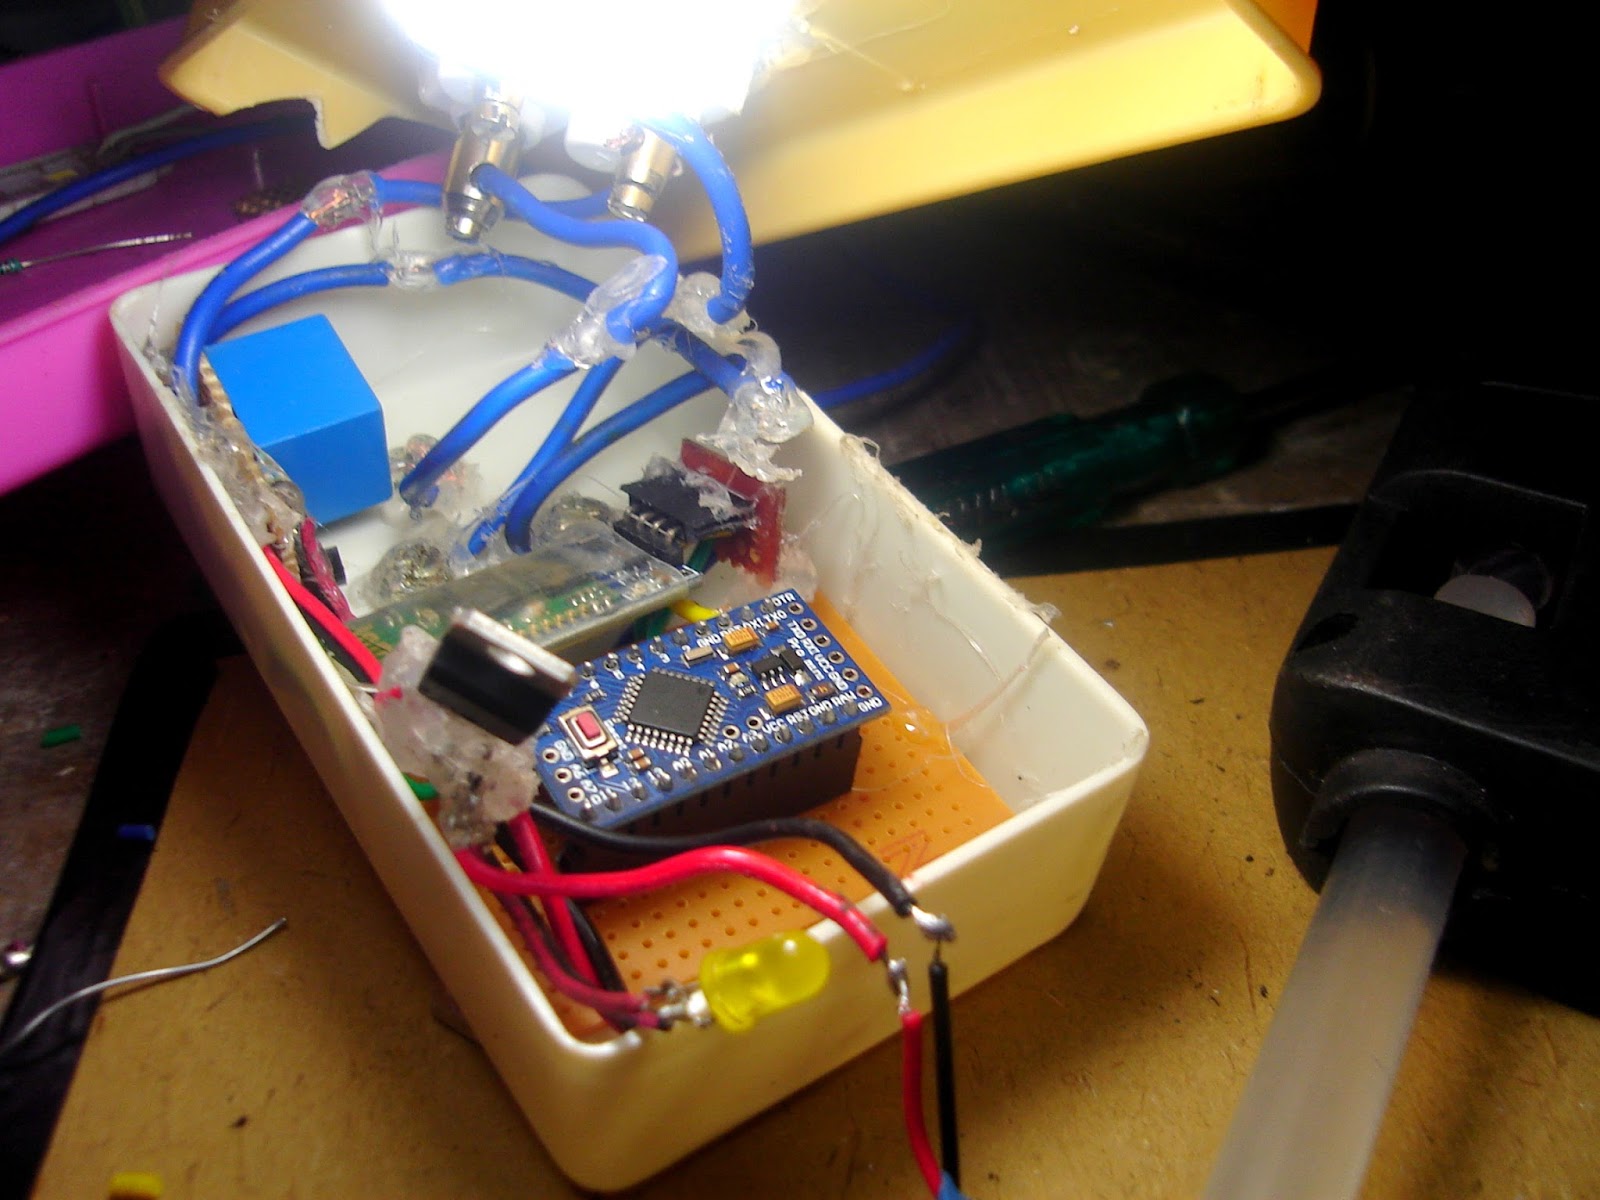 Robotech Maker: Smart Arduino AC Plug